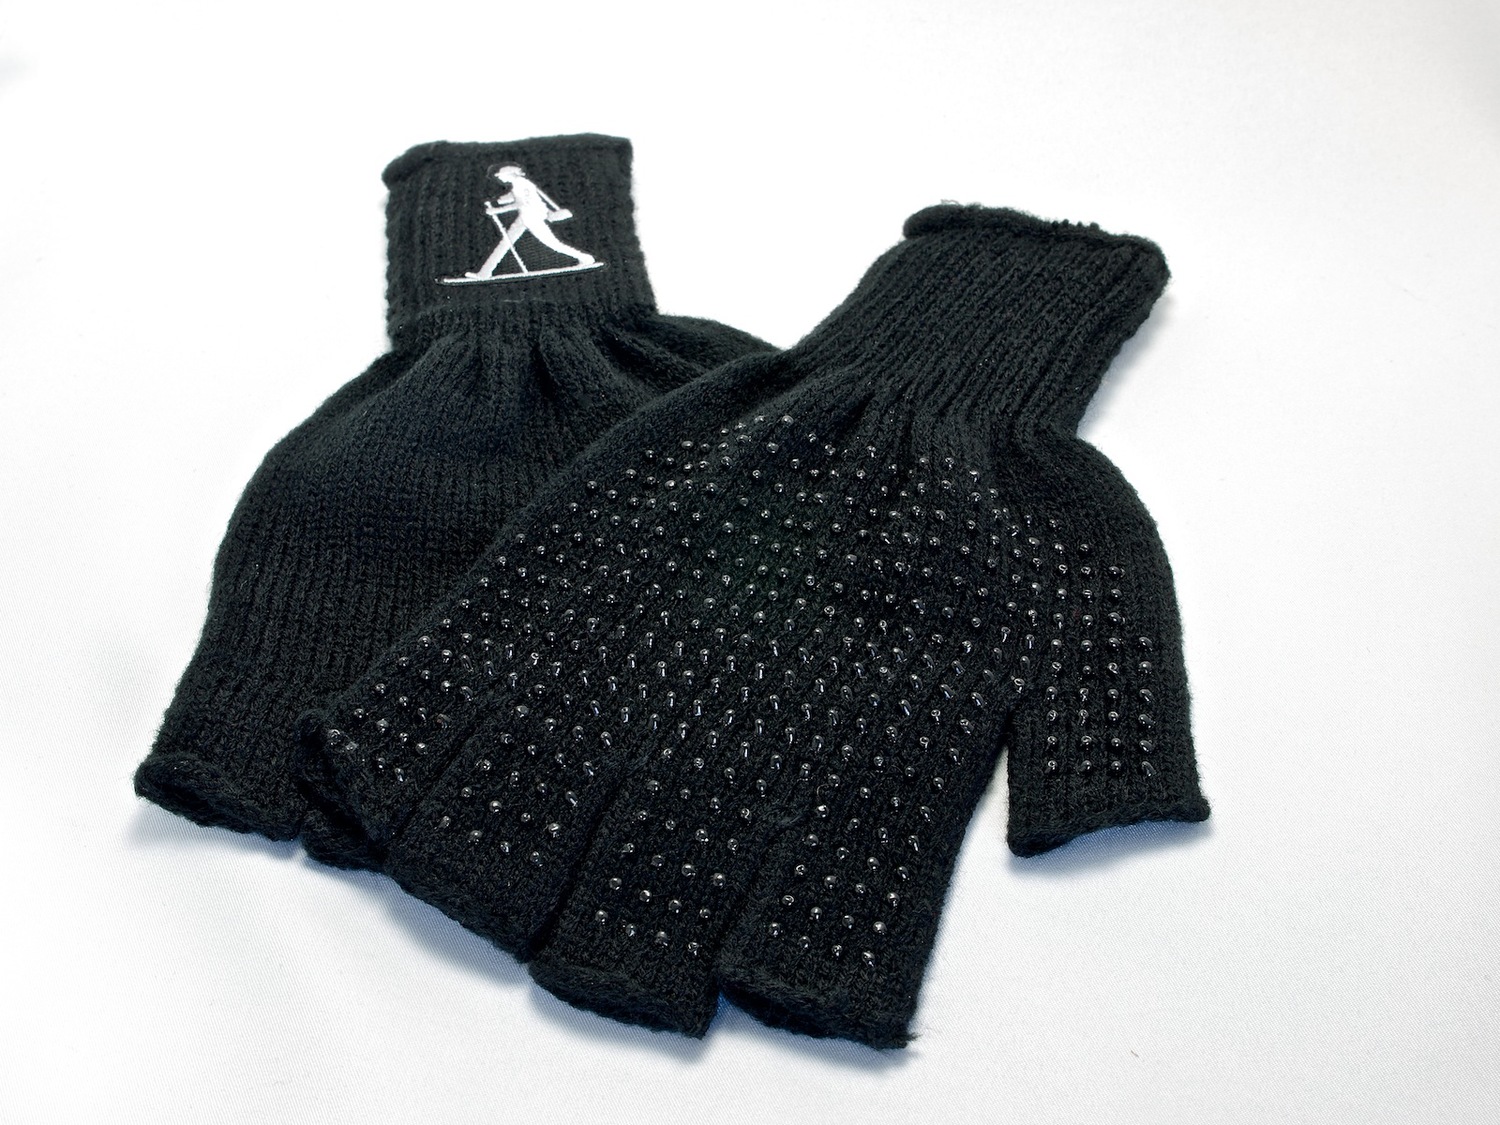 http://thedigitalstory.com/2014/11/10/nimble-fingerless-gloves.jpg